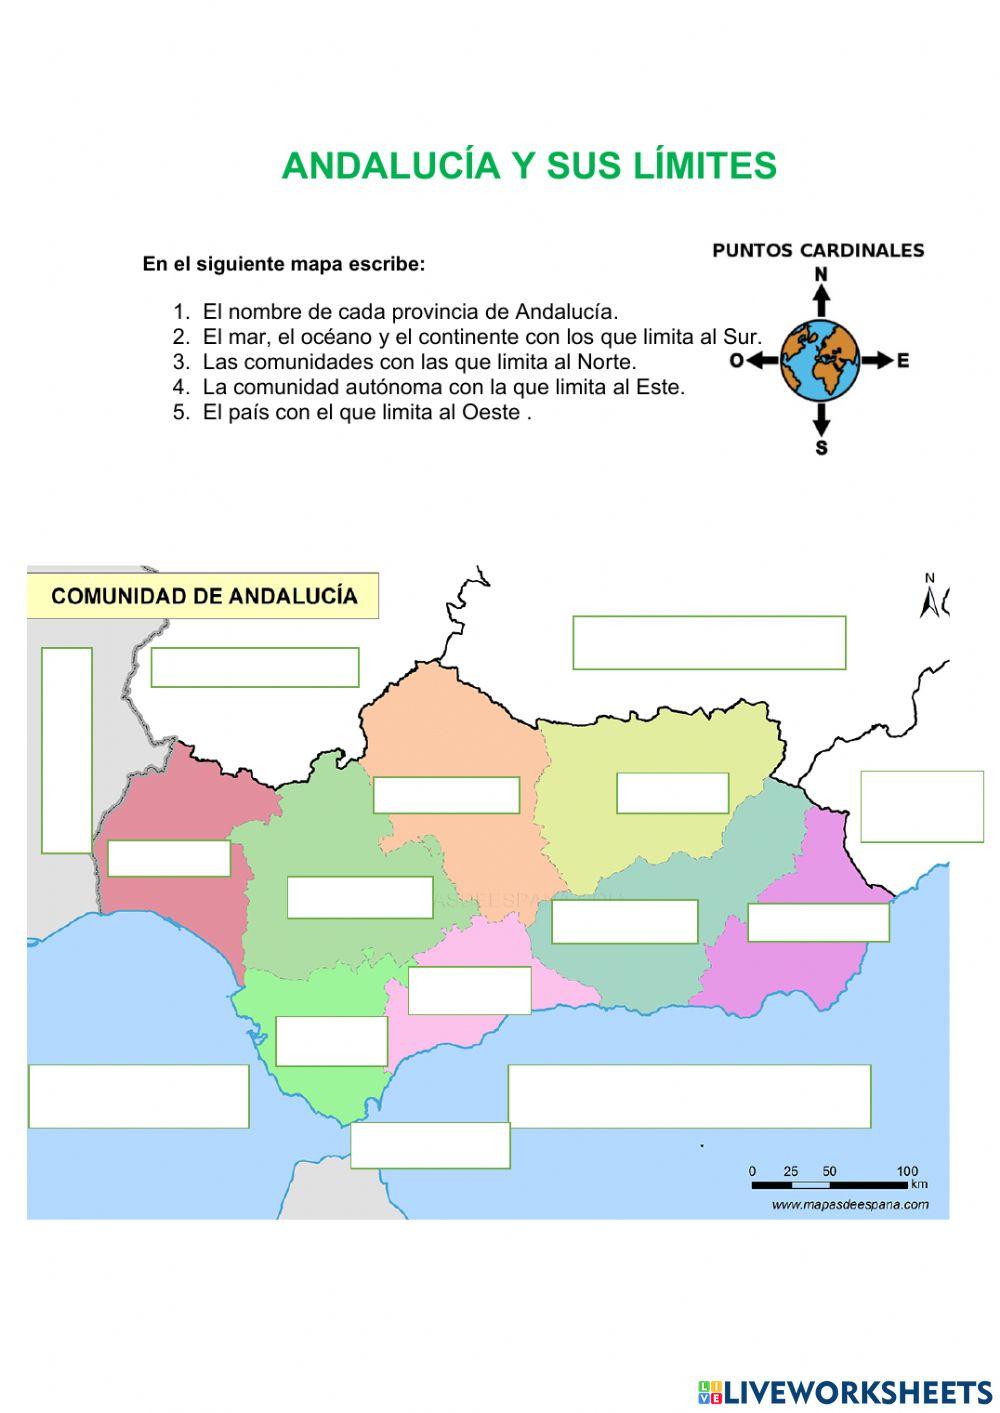 Andalucía y sus límites